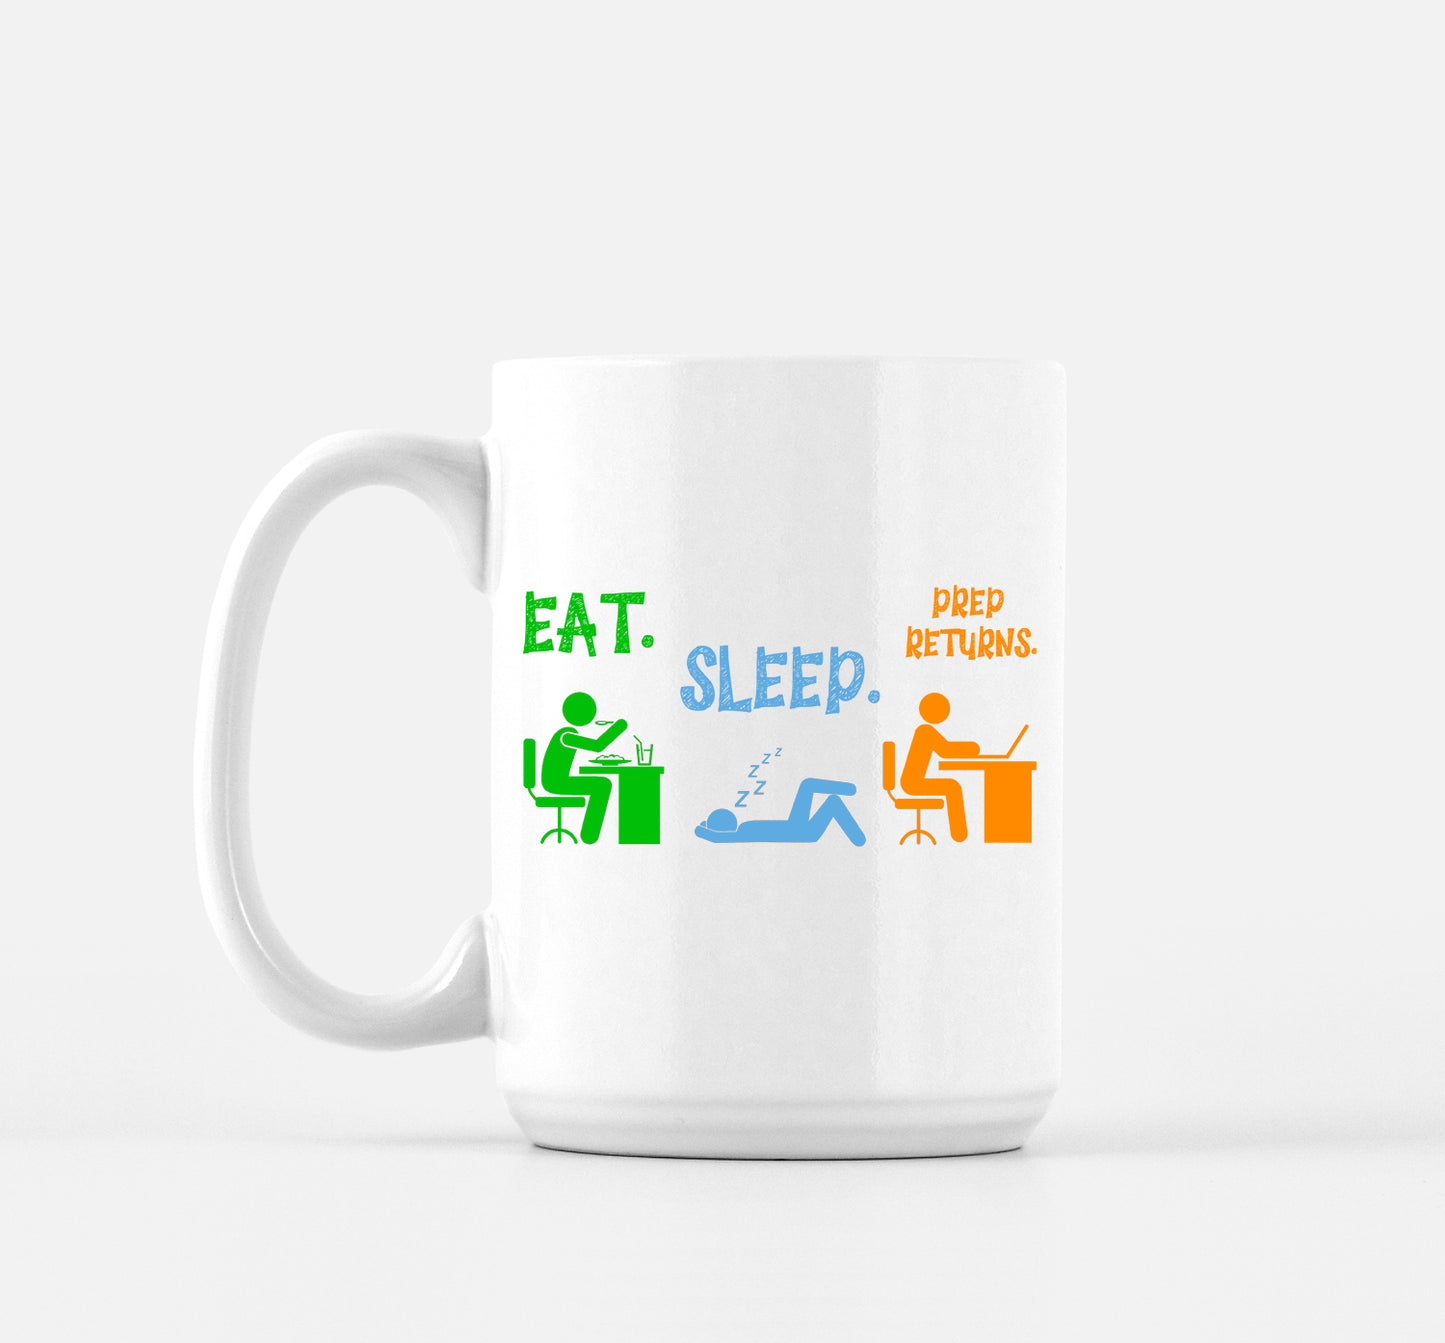 Eat Sleep Prep Returns Mug for Tax Accountants